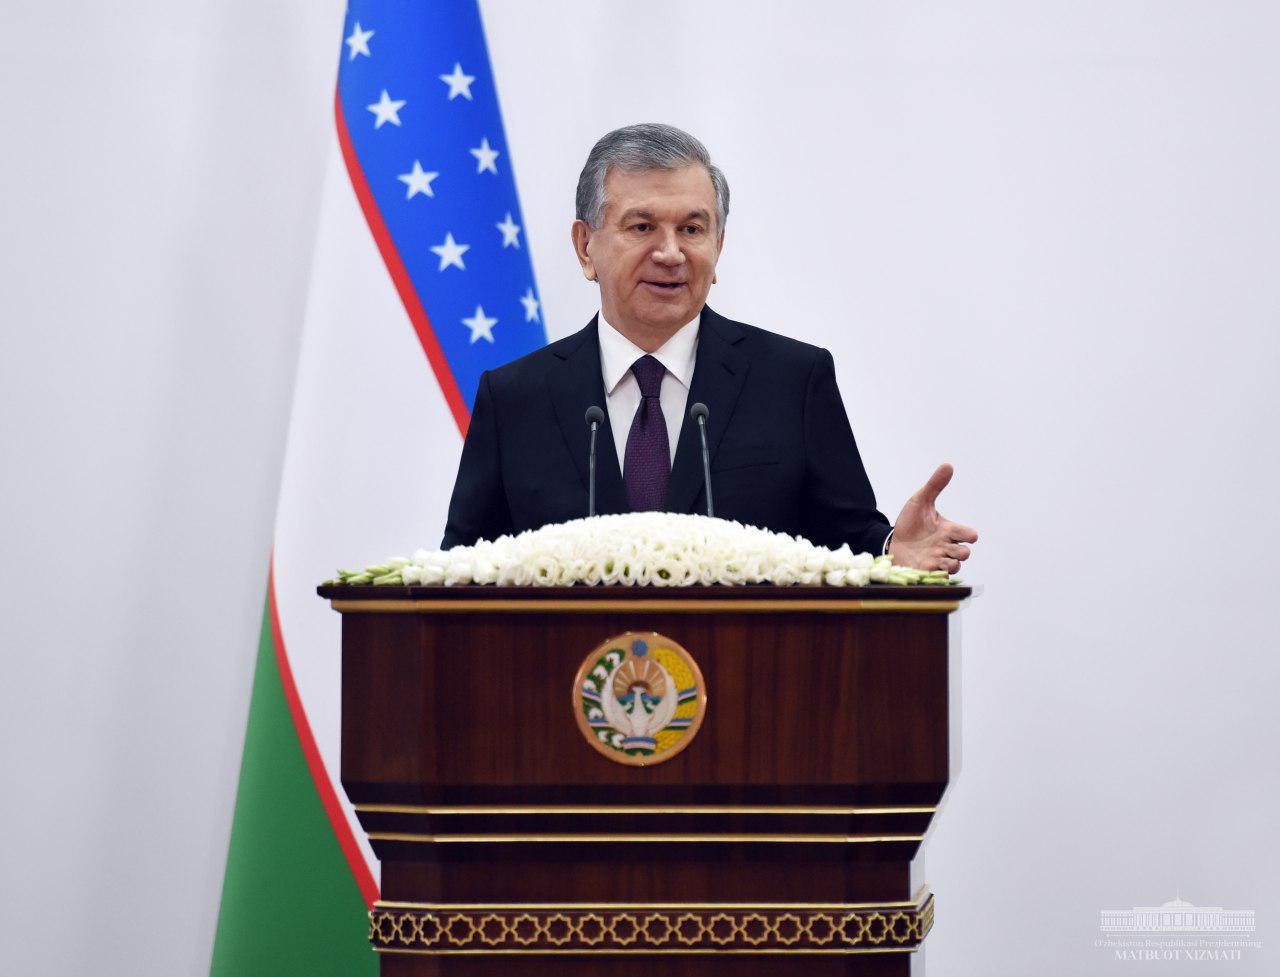 «До сегодняшнего дня в Узбекистане существовала опасность для инвесторов», — Шавкат Мирзиёев